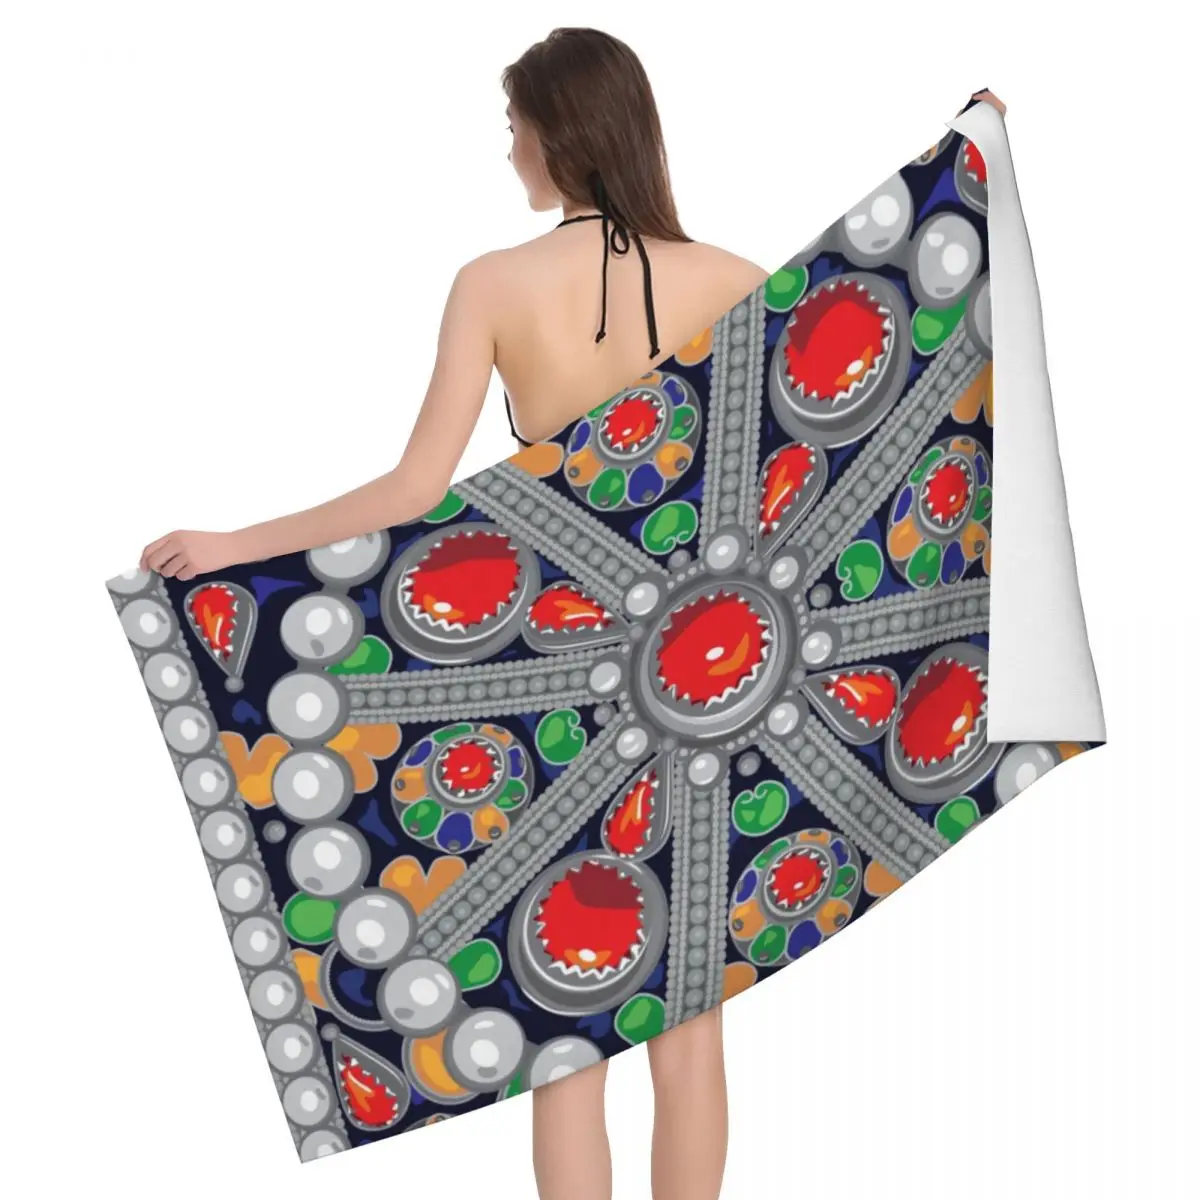 

Пляжное полотенце Tafzimth Kabyle из микрофибры, быстросохнущее, в этническом стиле, супермягкое, с геометрическим рисунком, для сауны, ванной комнаты, беребер